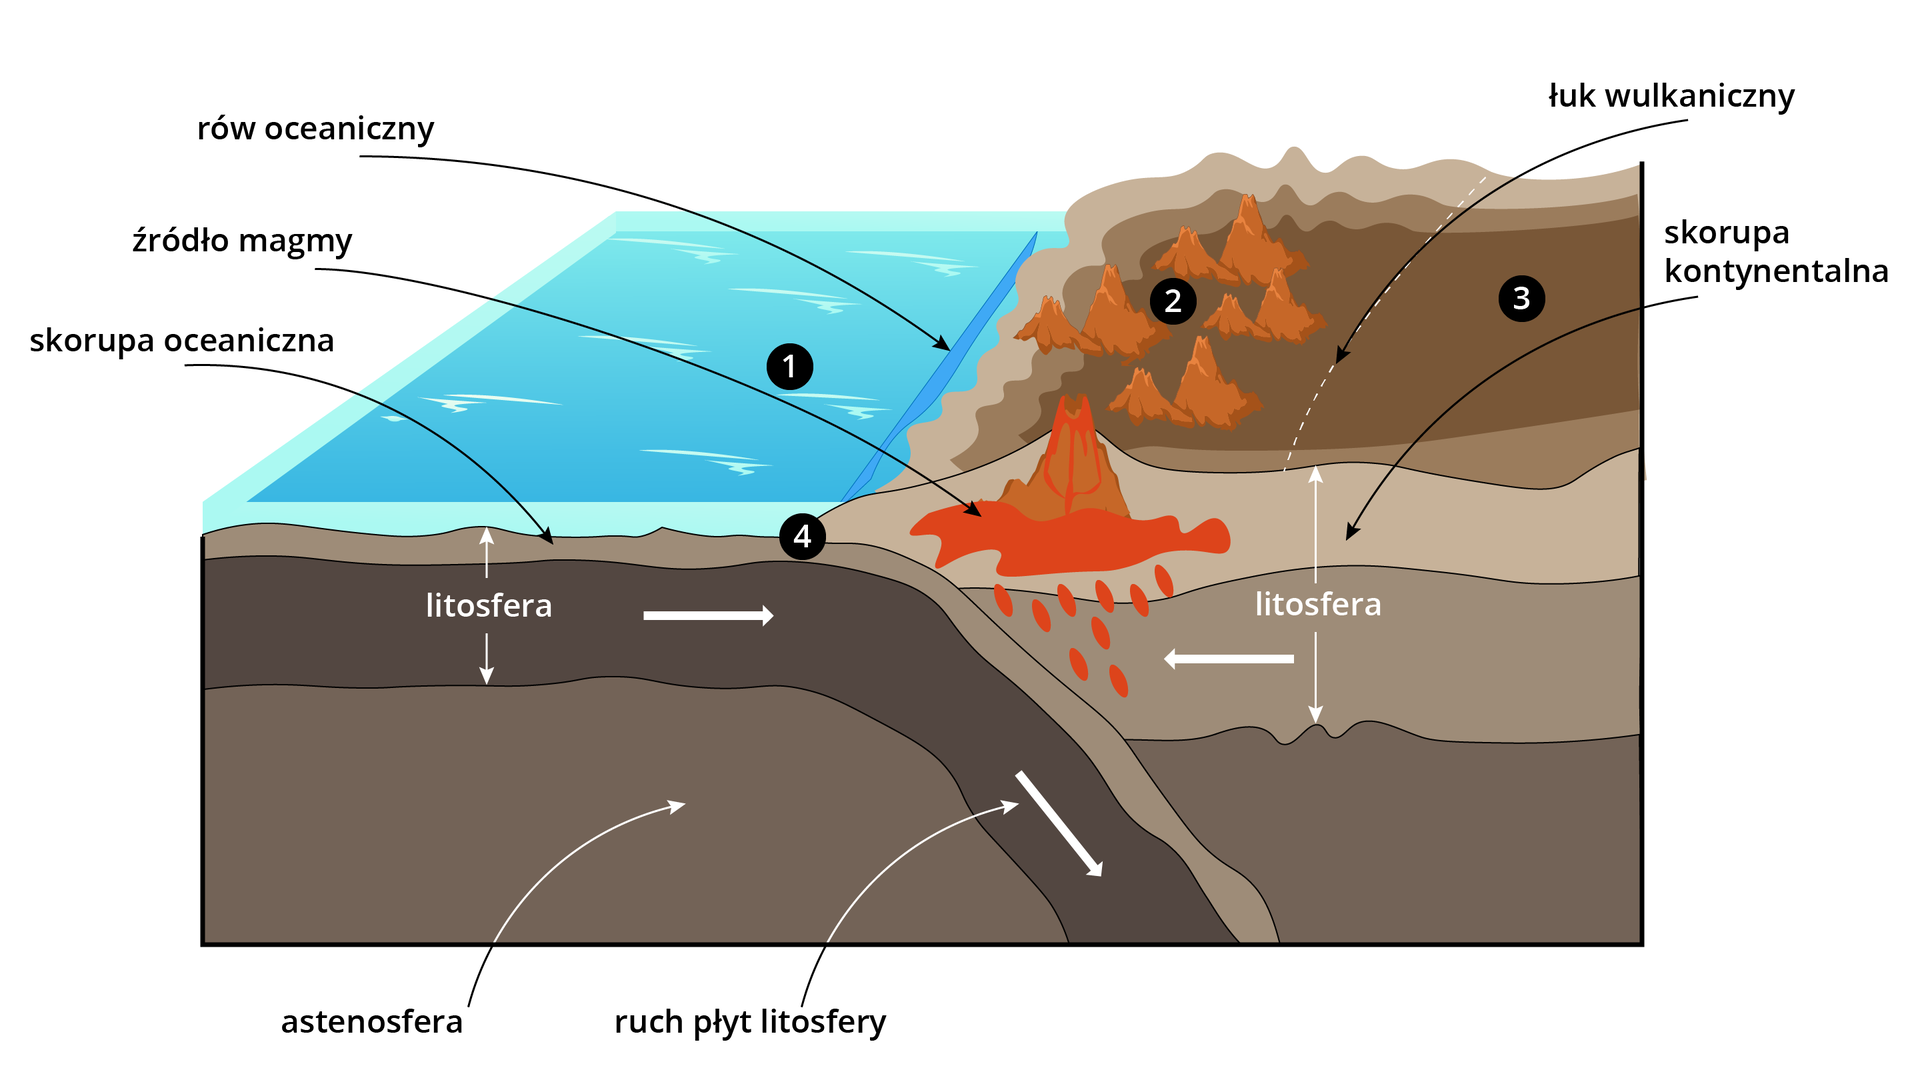 Schemat przedstawia budowę tektoniczną strefy subdukcji i bliskich okolic. Po lewej stronie ilustracji jest woda, a pod nią warstwy ziemi z zaznaczoną litosferą, opadającą pod warstwą lądu, oraz skorupą oceaniczną. Poniżej litosfery jest astenosfera. Wodę oznaczono numerem 1. W wodzie przed lądem znajduje się rów oceaniczny. Na lądzie, blisko brzegu, znajdują się stożkowate wzniesienia. Oznaczono je numerem 2. Po prawej stronie stożków jest wulkan z zaznaczonym źródłem magmy. Wulkan ten znajduje się na skorupie kontynentalnej. Za stożkami jest łukowata strzałka w dół z napisem łuk wulkaniczny, za strzałką jest obszar oznaczony numerem 3. Numerem 4 zaznaczono miejsce na ilustracji, w którym skorupa oceaniczna na styku wody i lądu opada w głąb ziemi.     